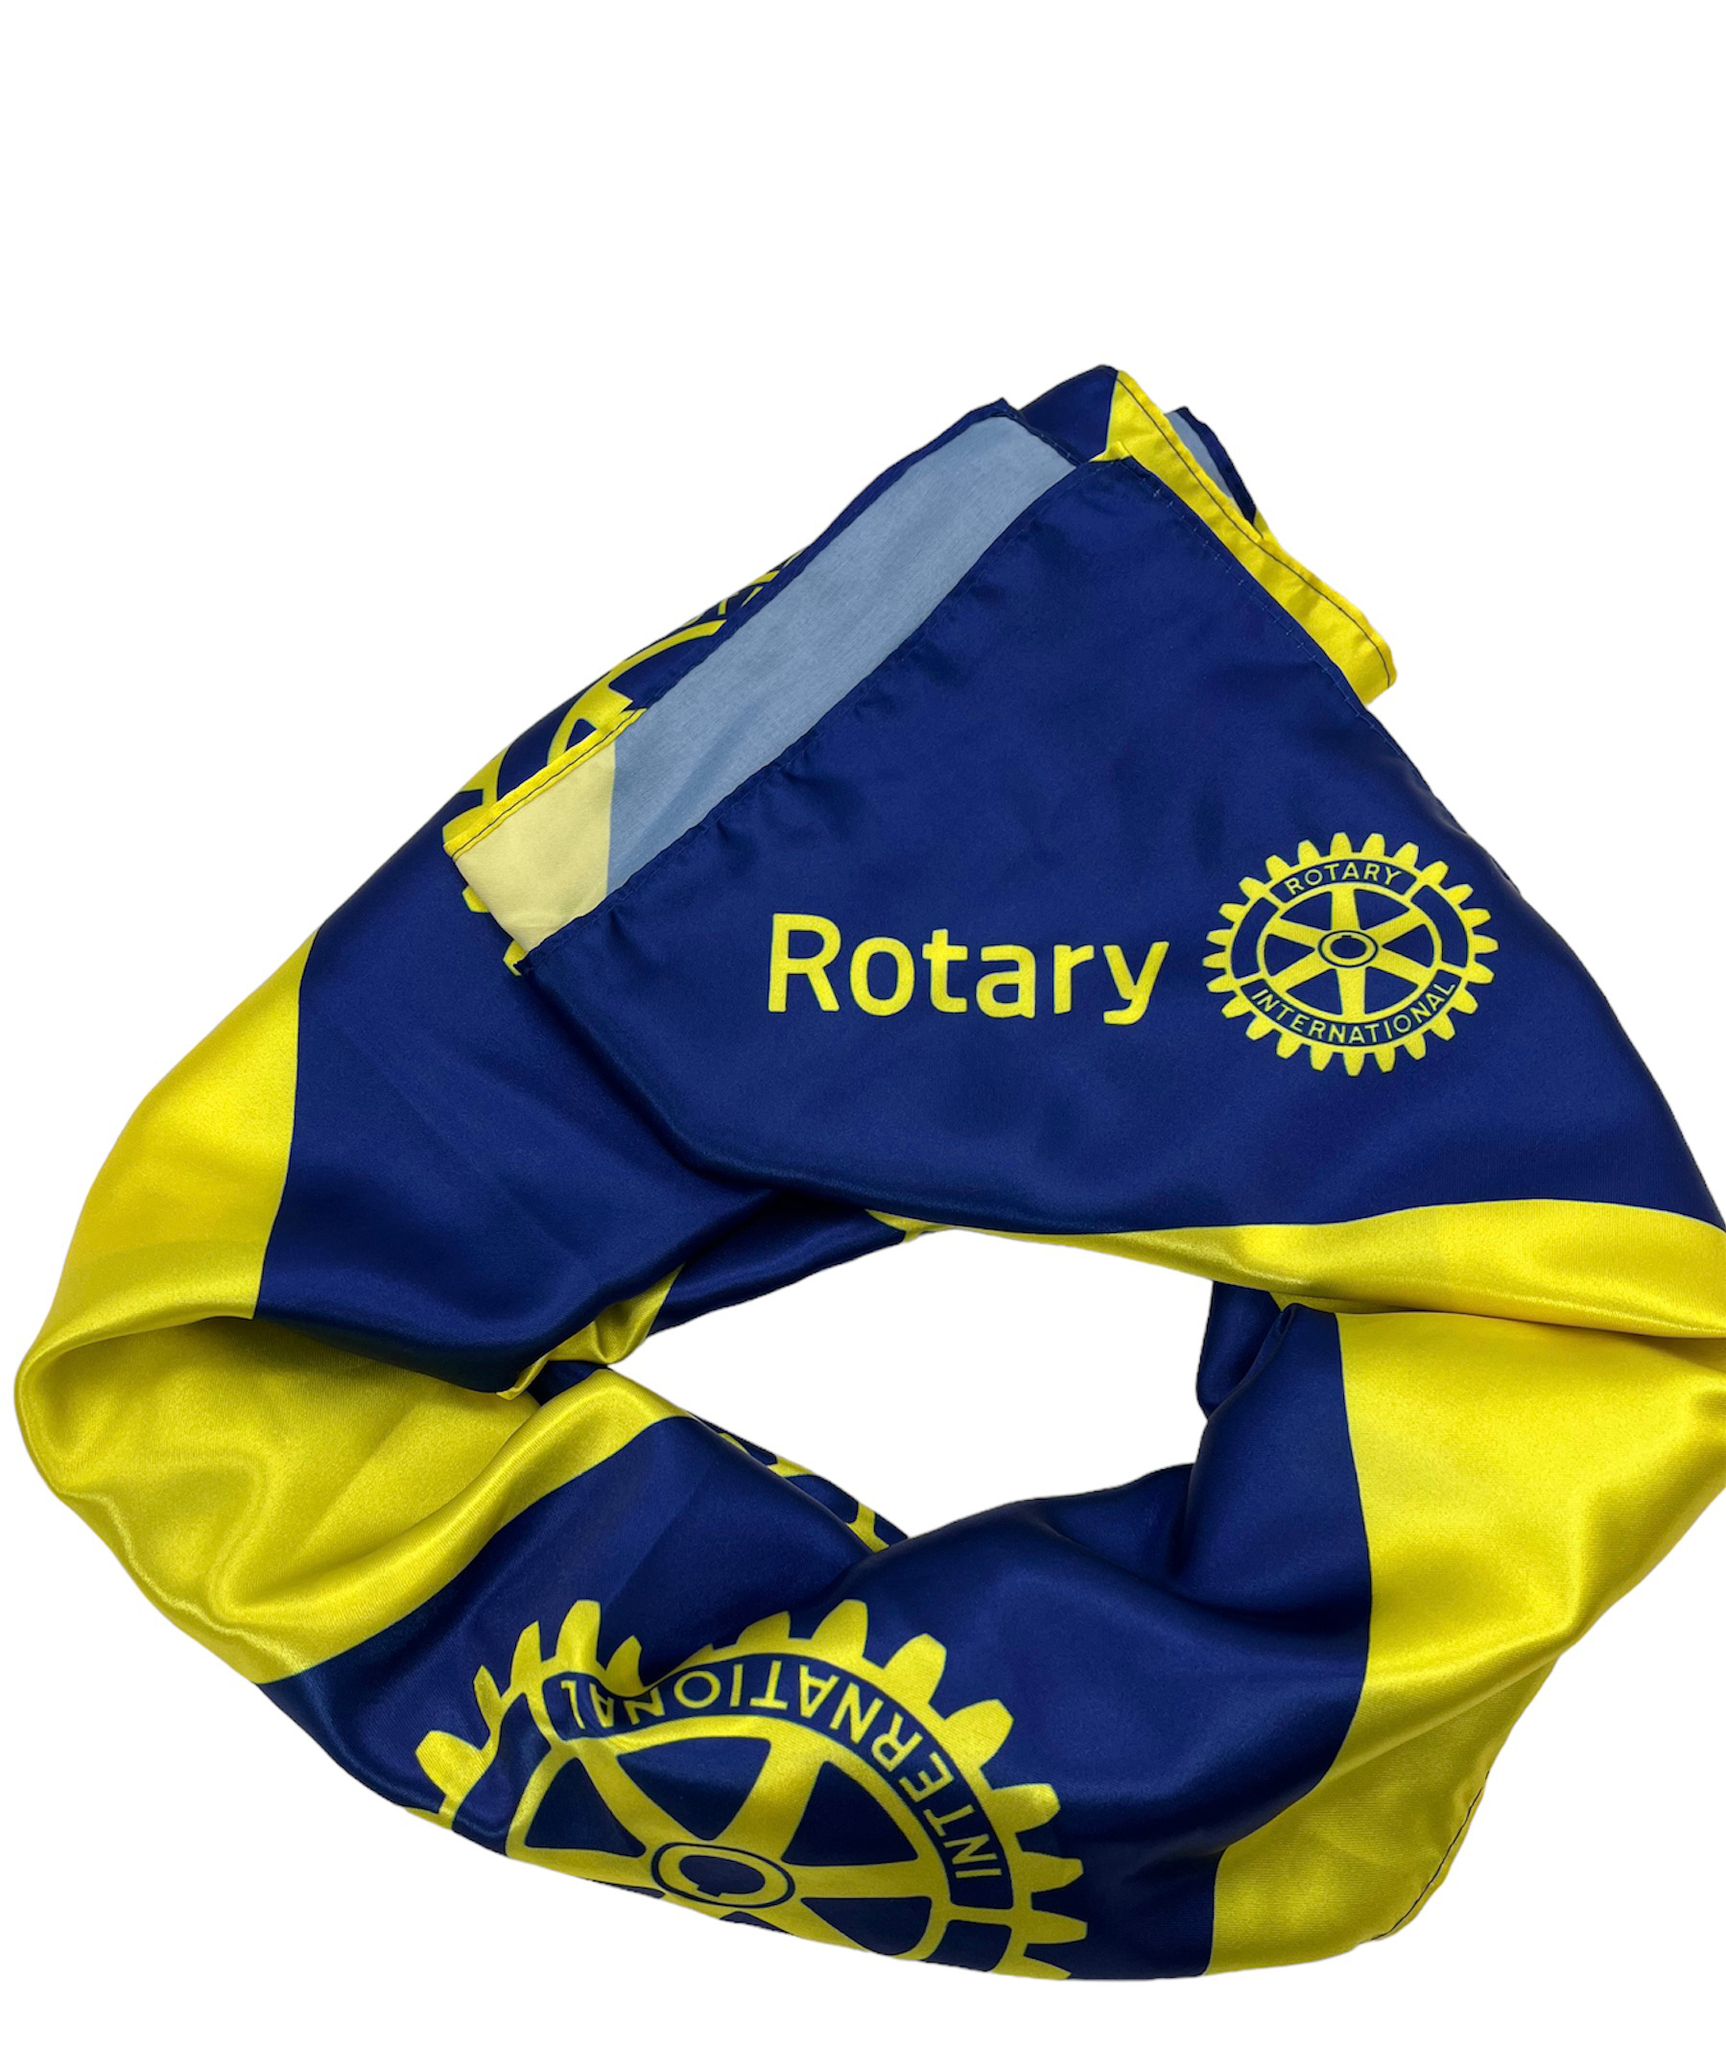 Rotary Schaltuch - Blau Gelb